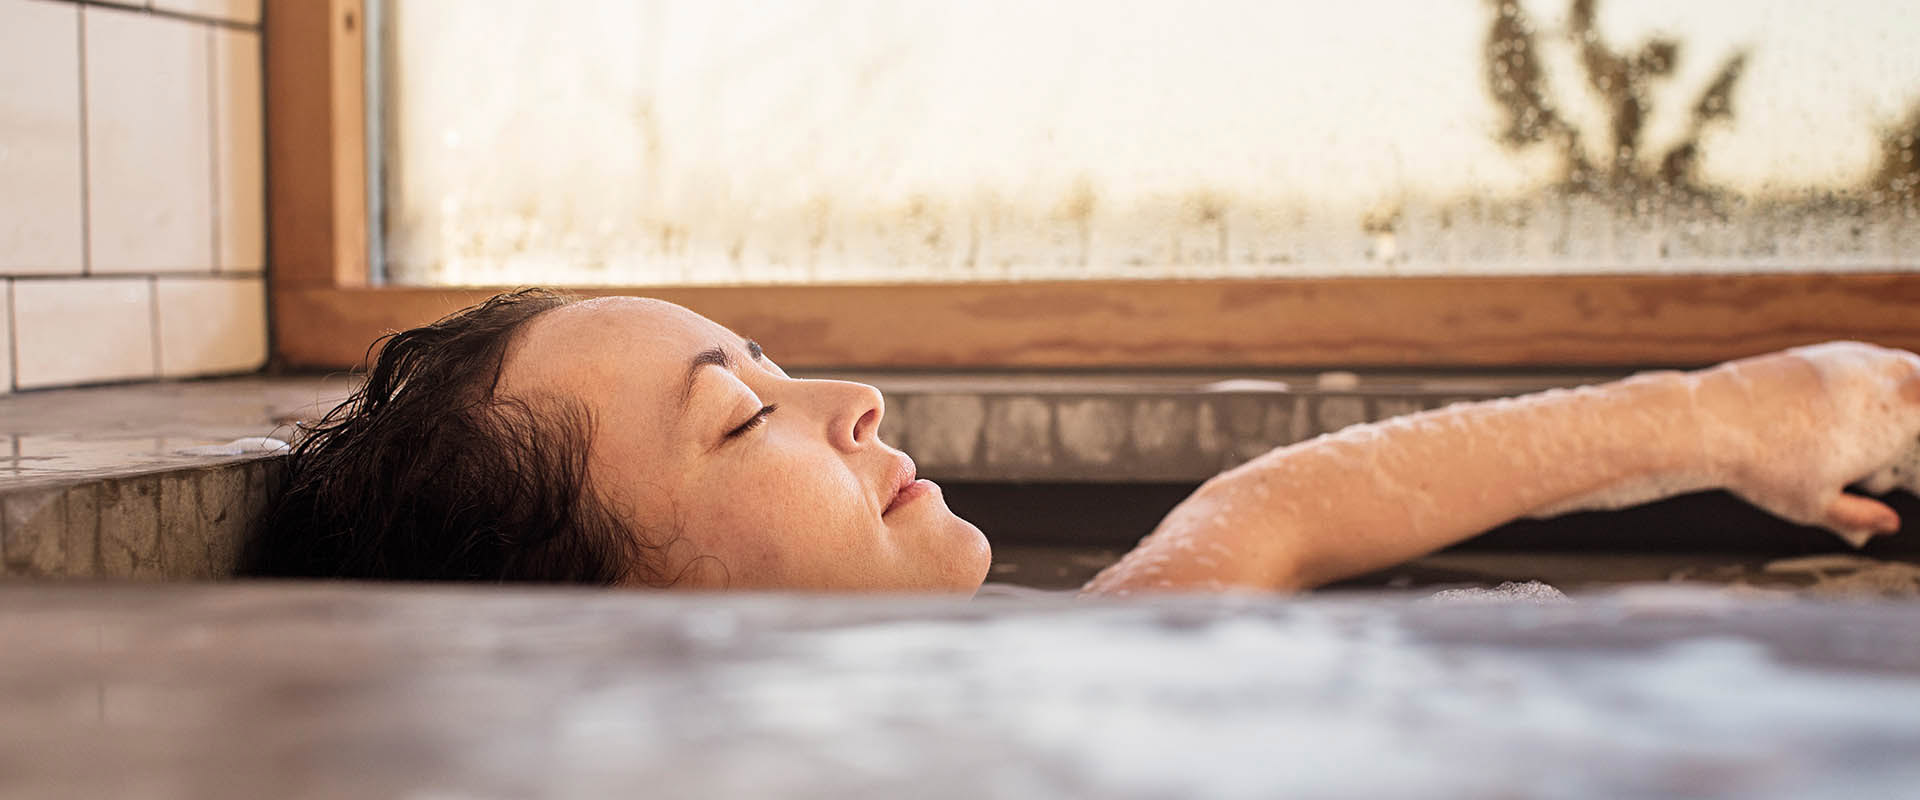 Frau entspannt in einer heißen Badewanne